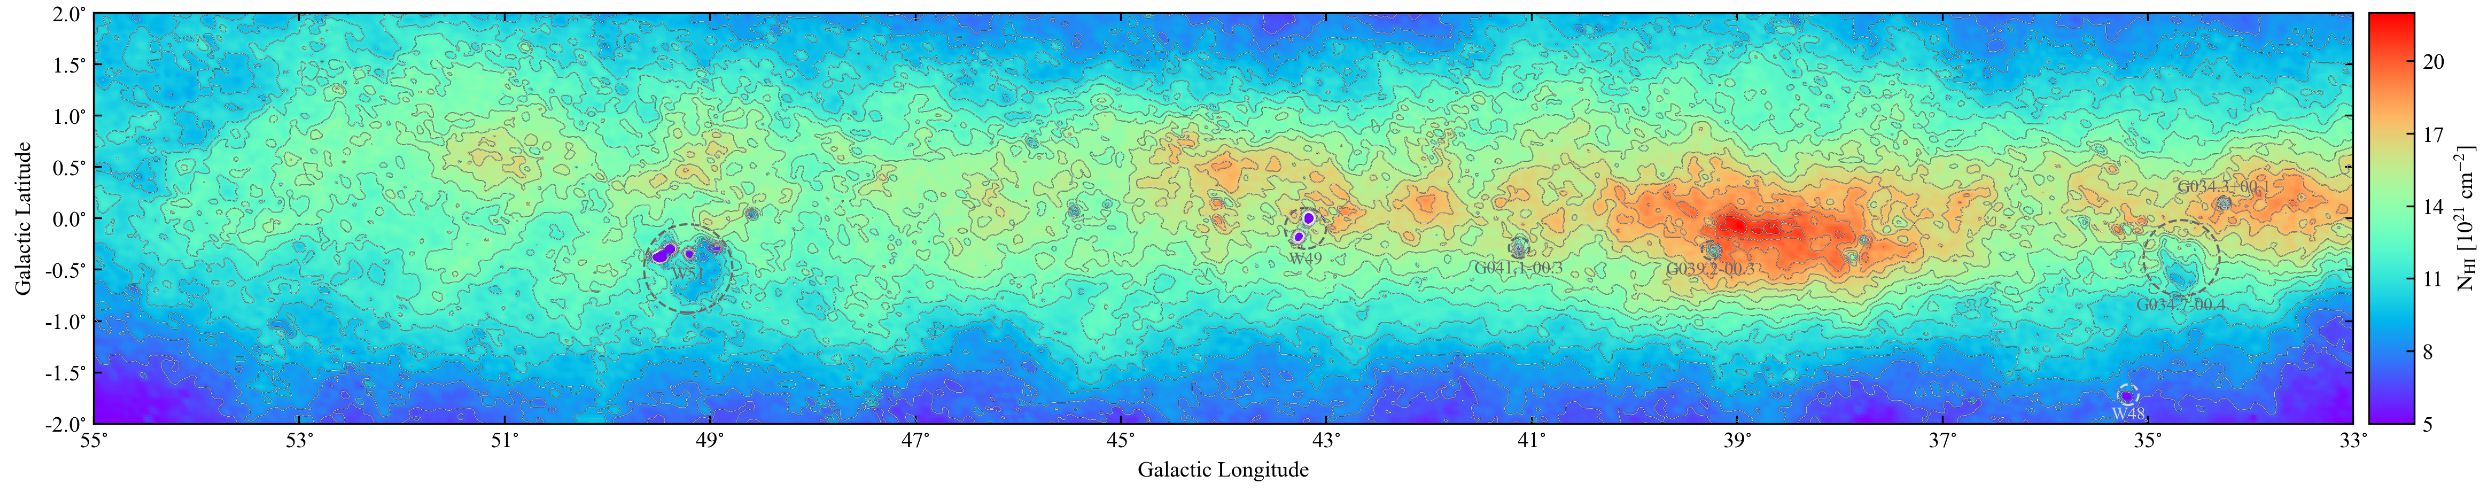 FAST揭示的银河星际氢原子气体分布图(速度区间-150 km/s到 150 km/s的累积)